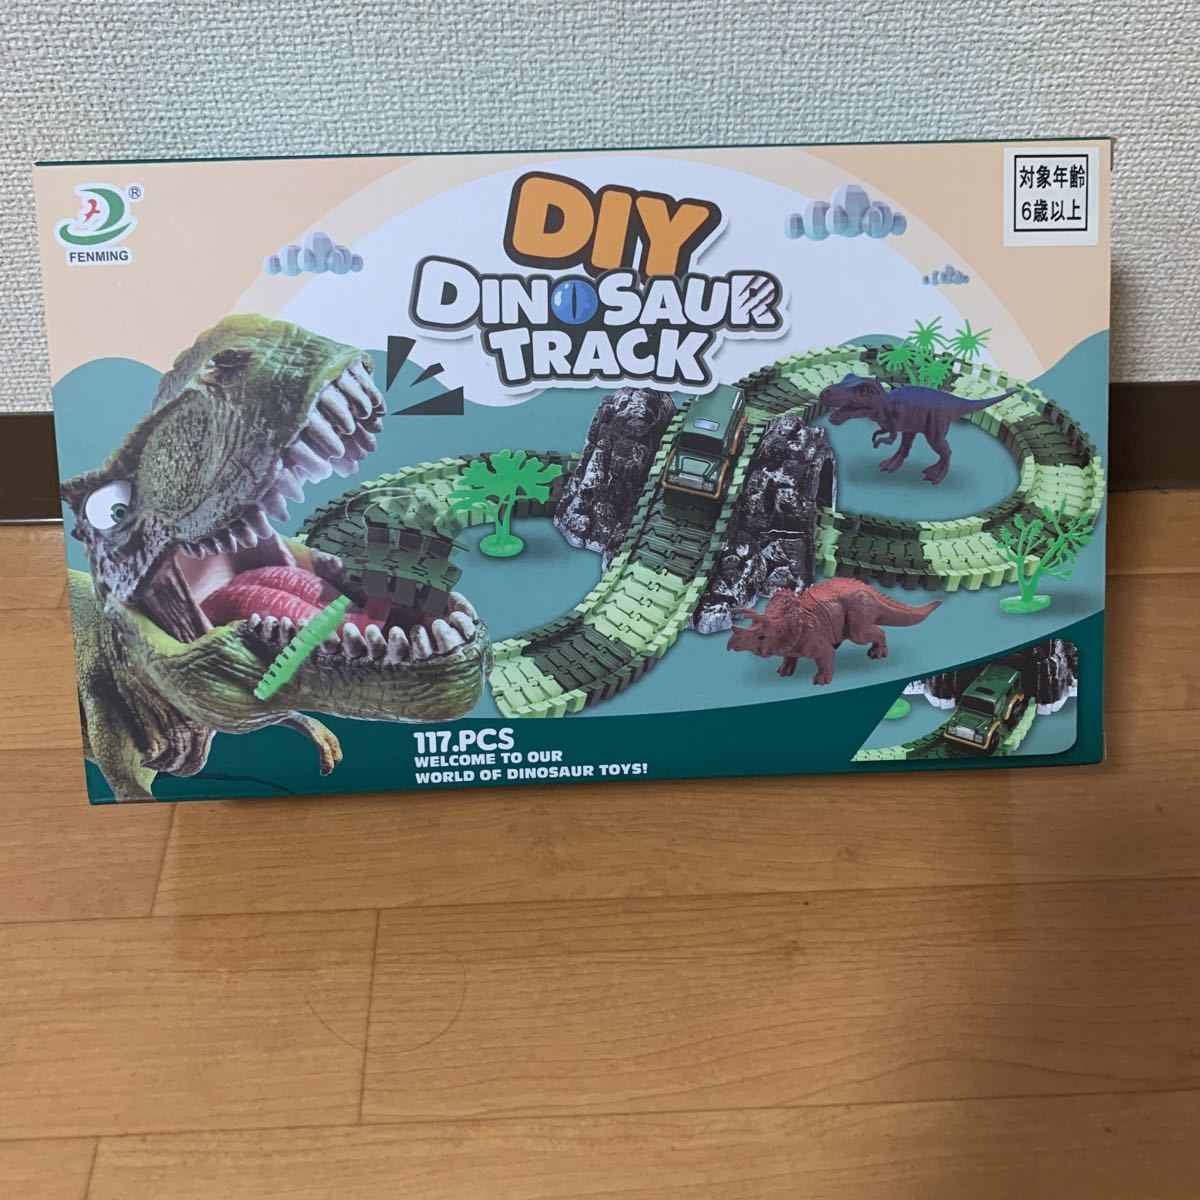 大特価 新品未開封 Fenming Diy Dinosaur Track 117 Pcs Welcome To Our World Of Toys 恐竜 ミニカー Automy Global